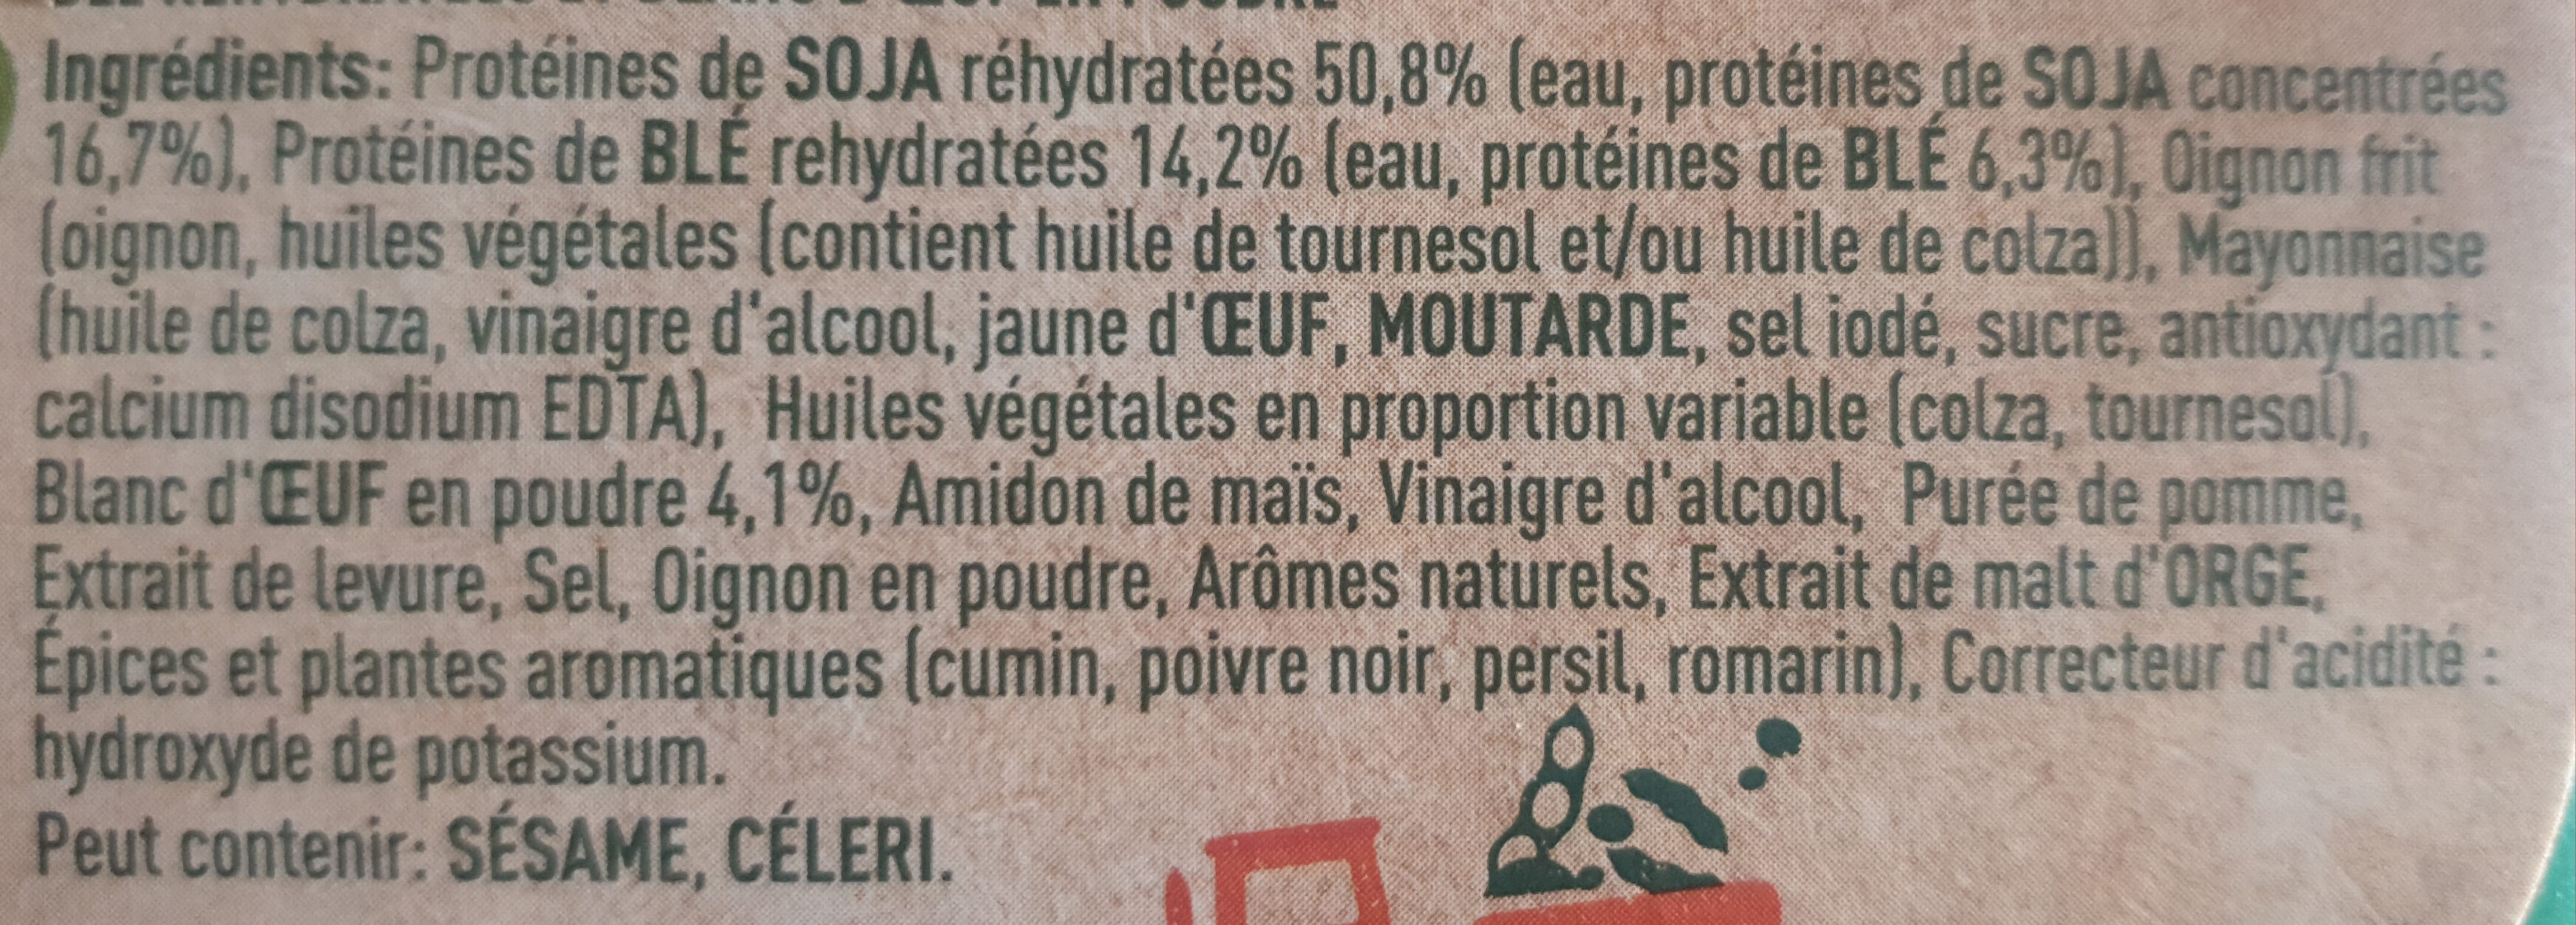 GARDEN GOURMET Le Classique Soja et Blé 150g - Ingrédients